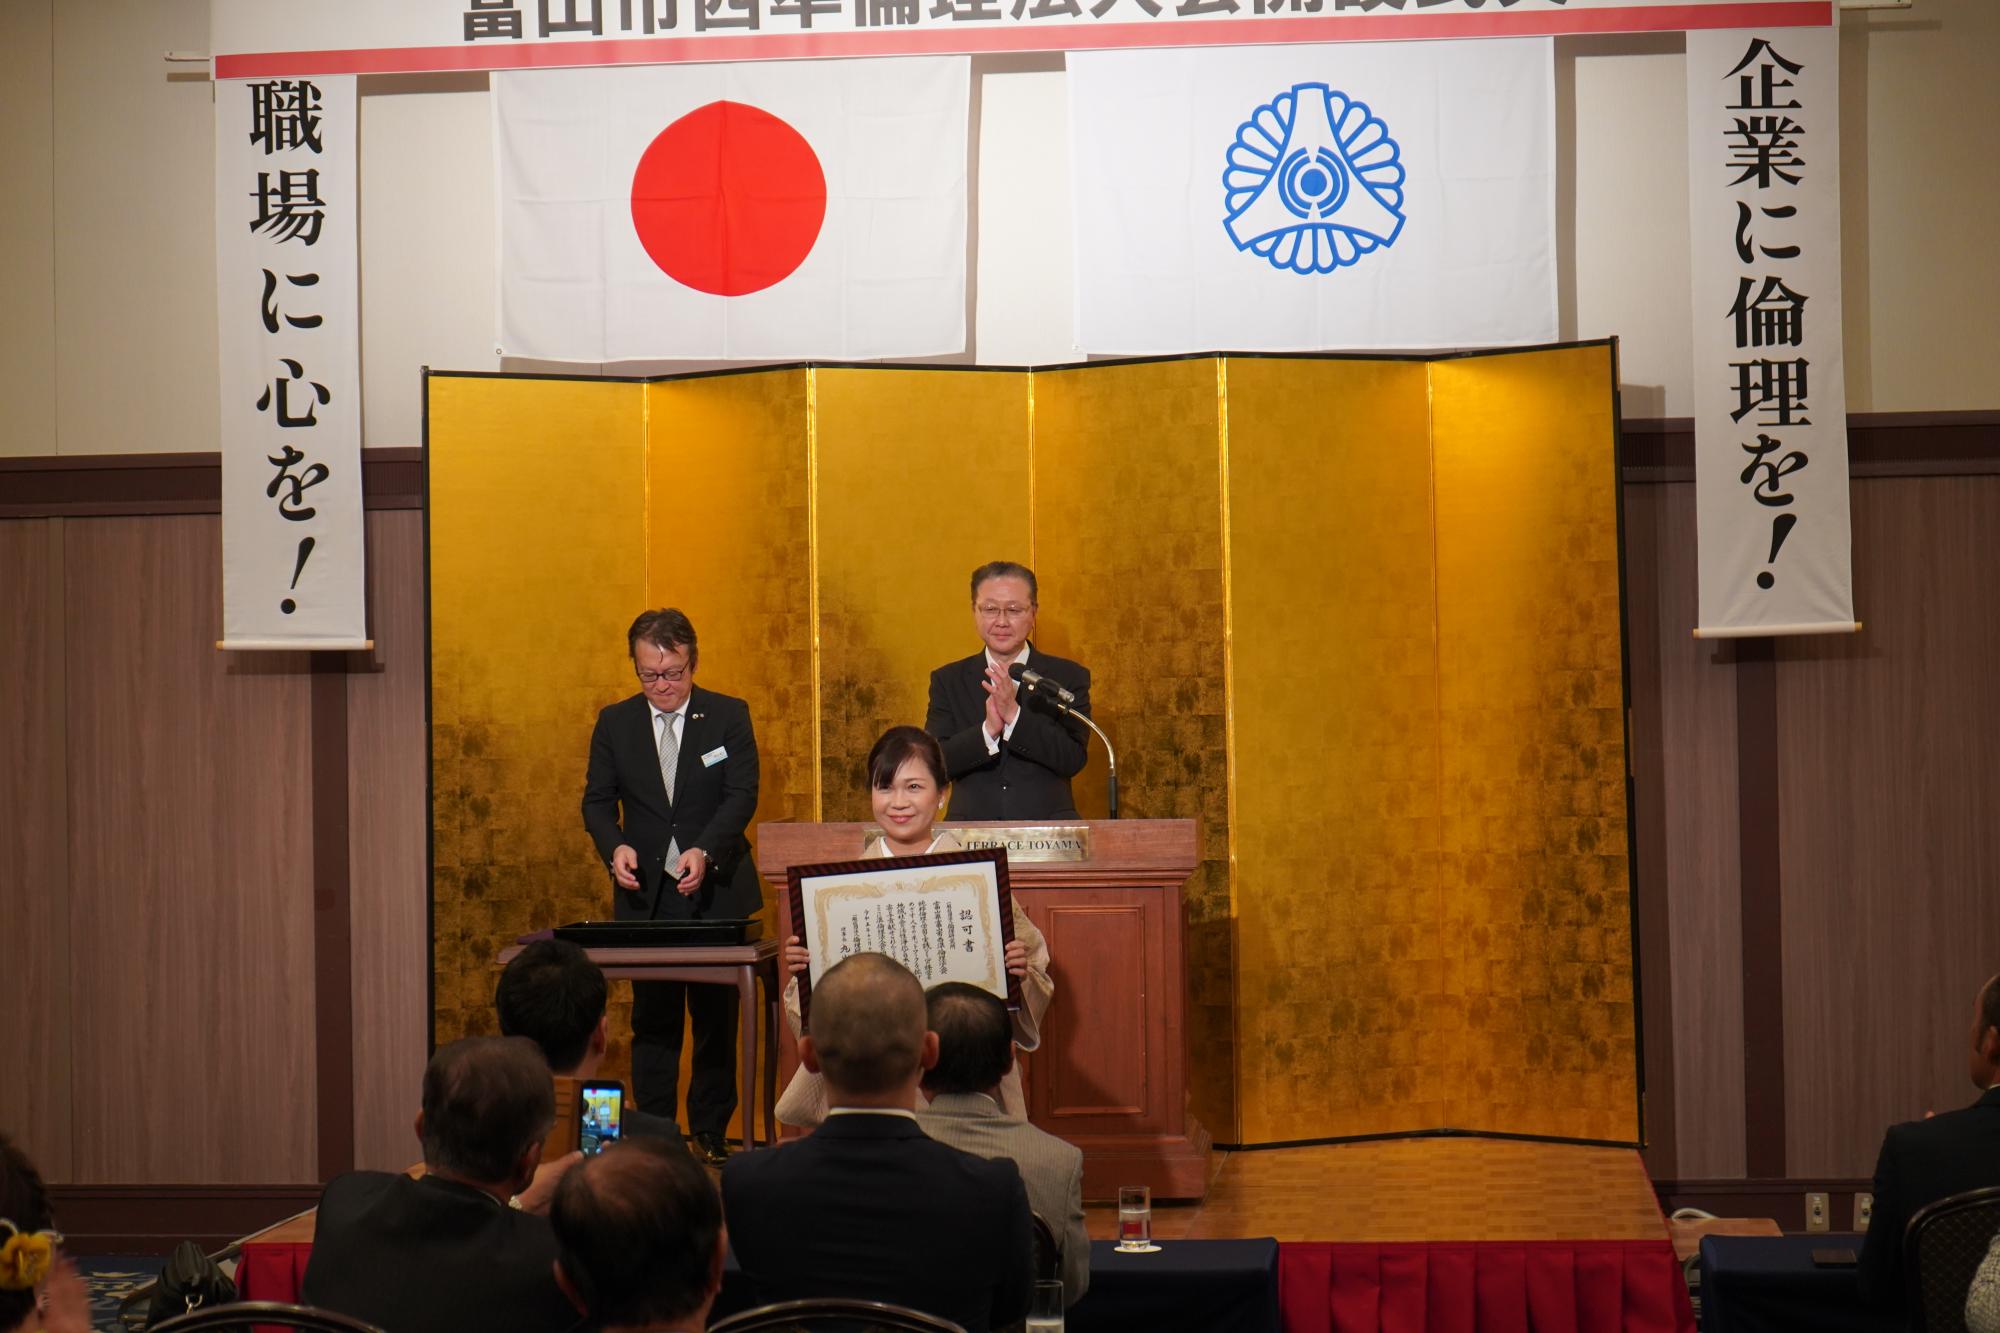 富山市西準倫理法人会の開設式典を無事開催することができました。